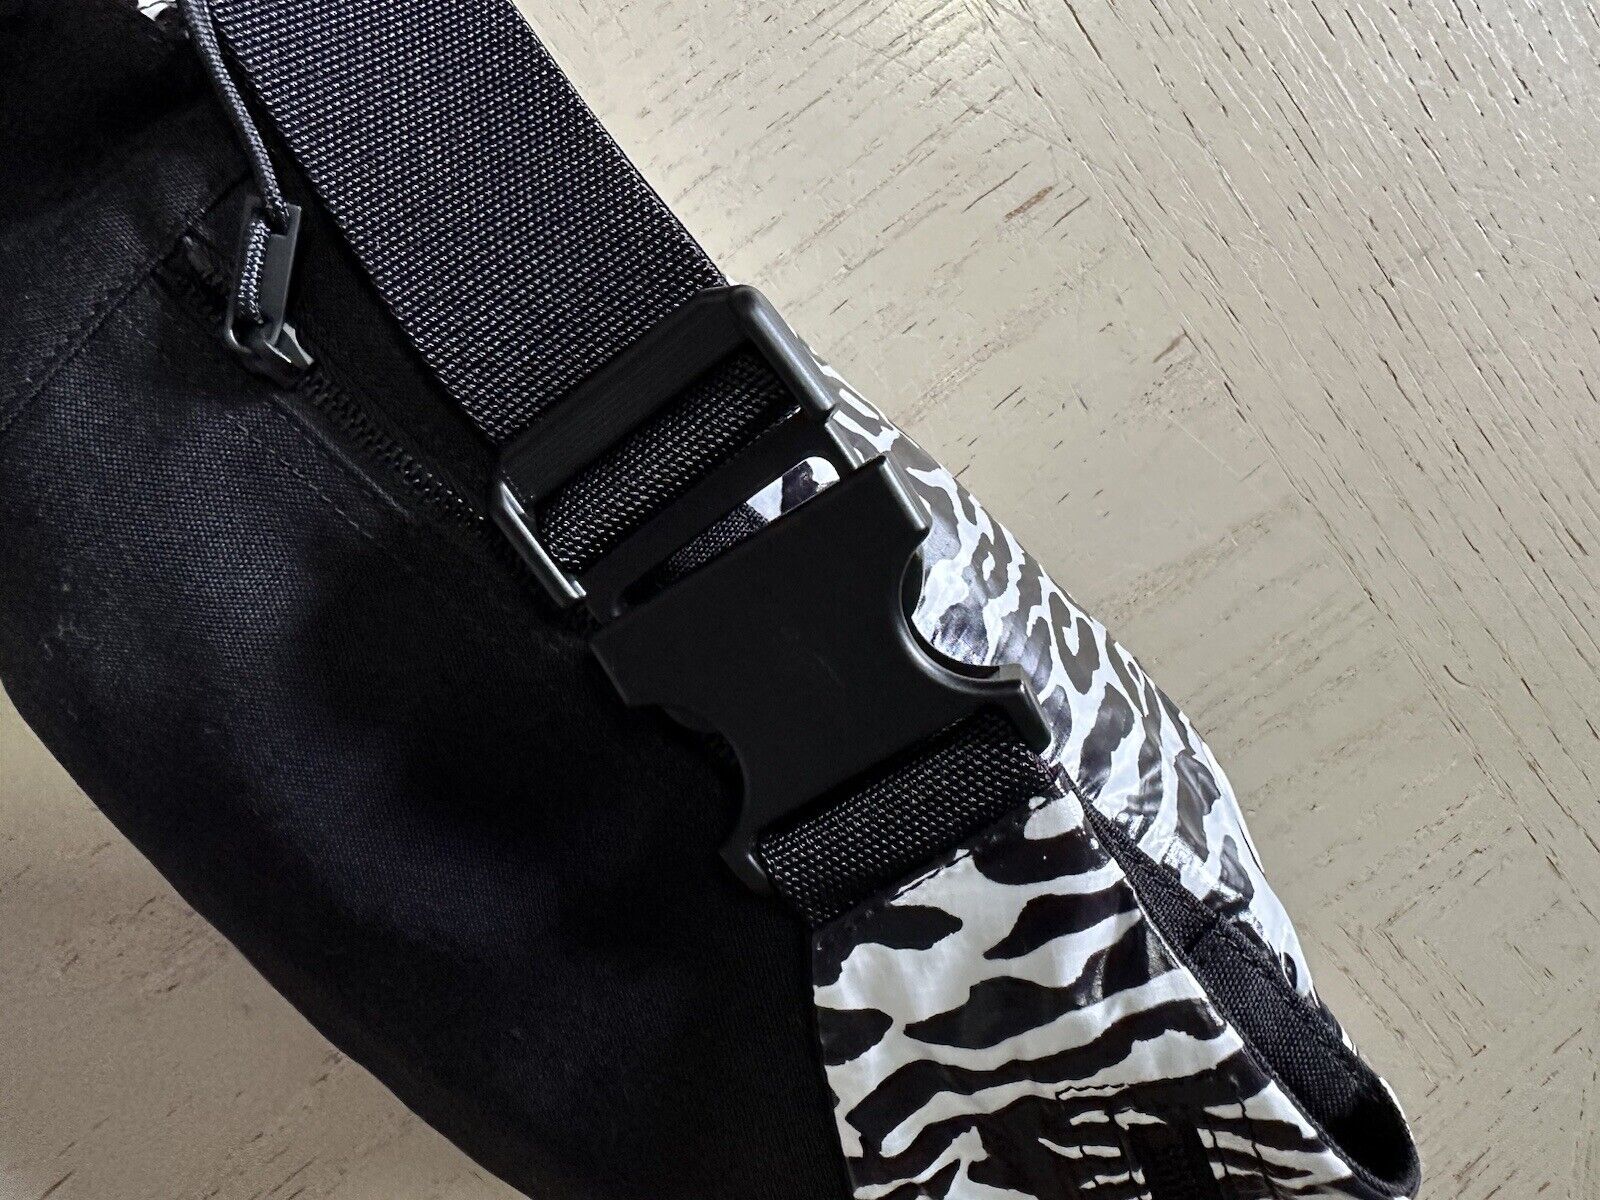 New Saint Laurent CROSSBODY BAG in leopard print nvlon Black/White